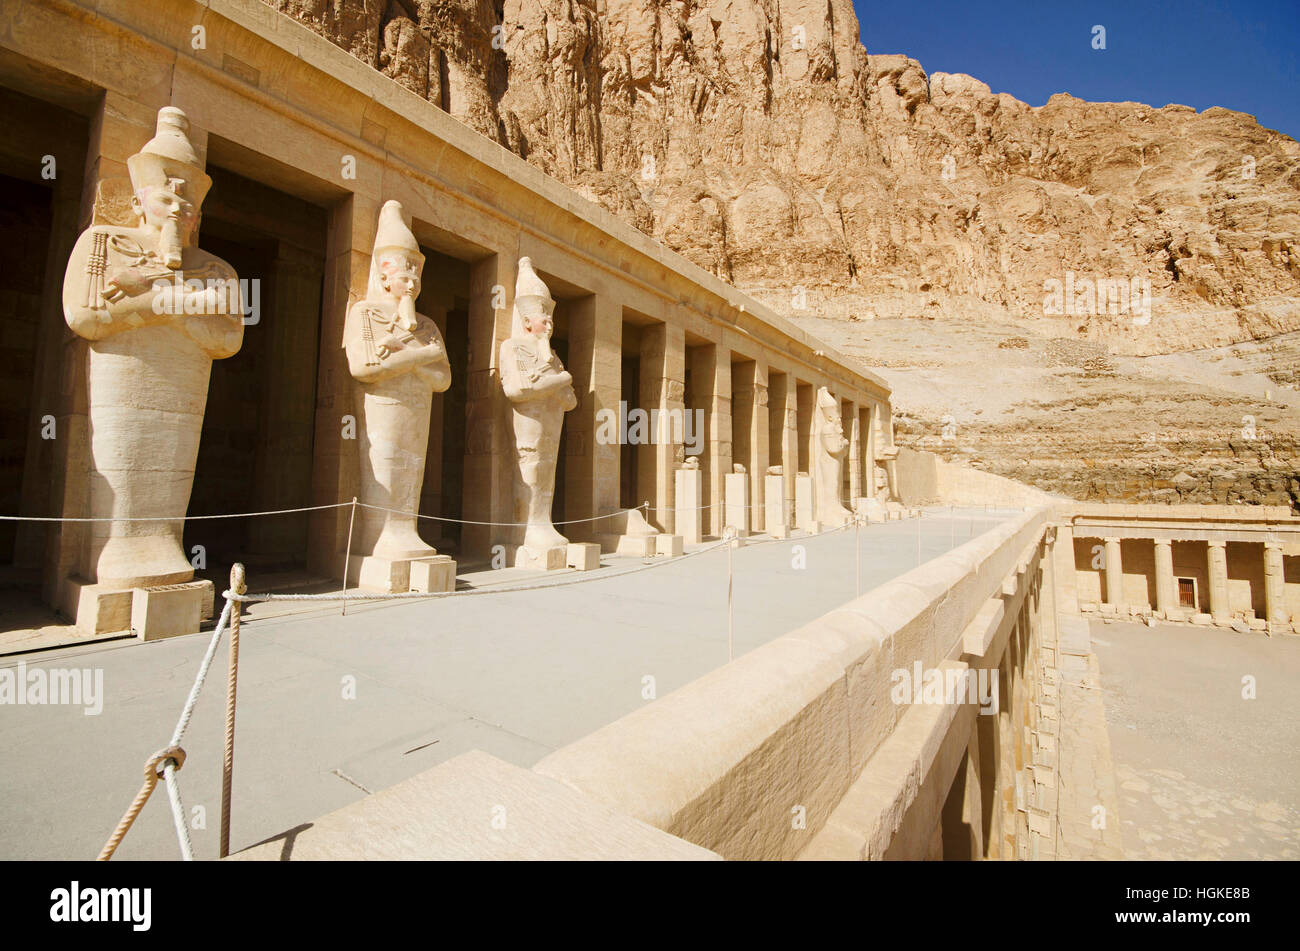 Vue extérieure du temple funéraire d'Hatshepsout, est un ancien lieu de culte funéraire, dédié au dieu soleil Amon, situé sur la rive ouest du Nil r Banque D'Images